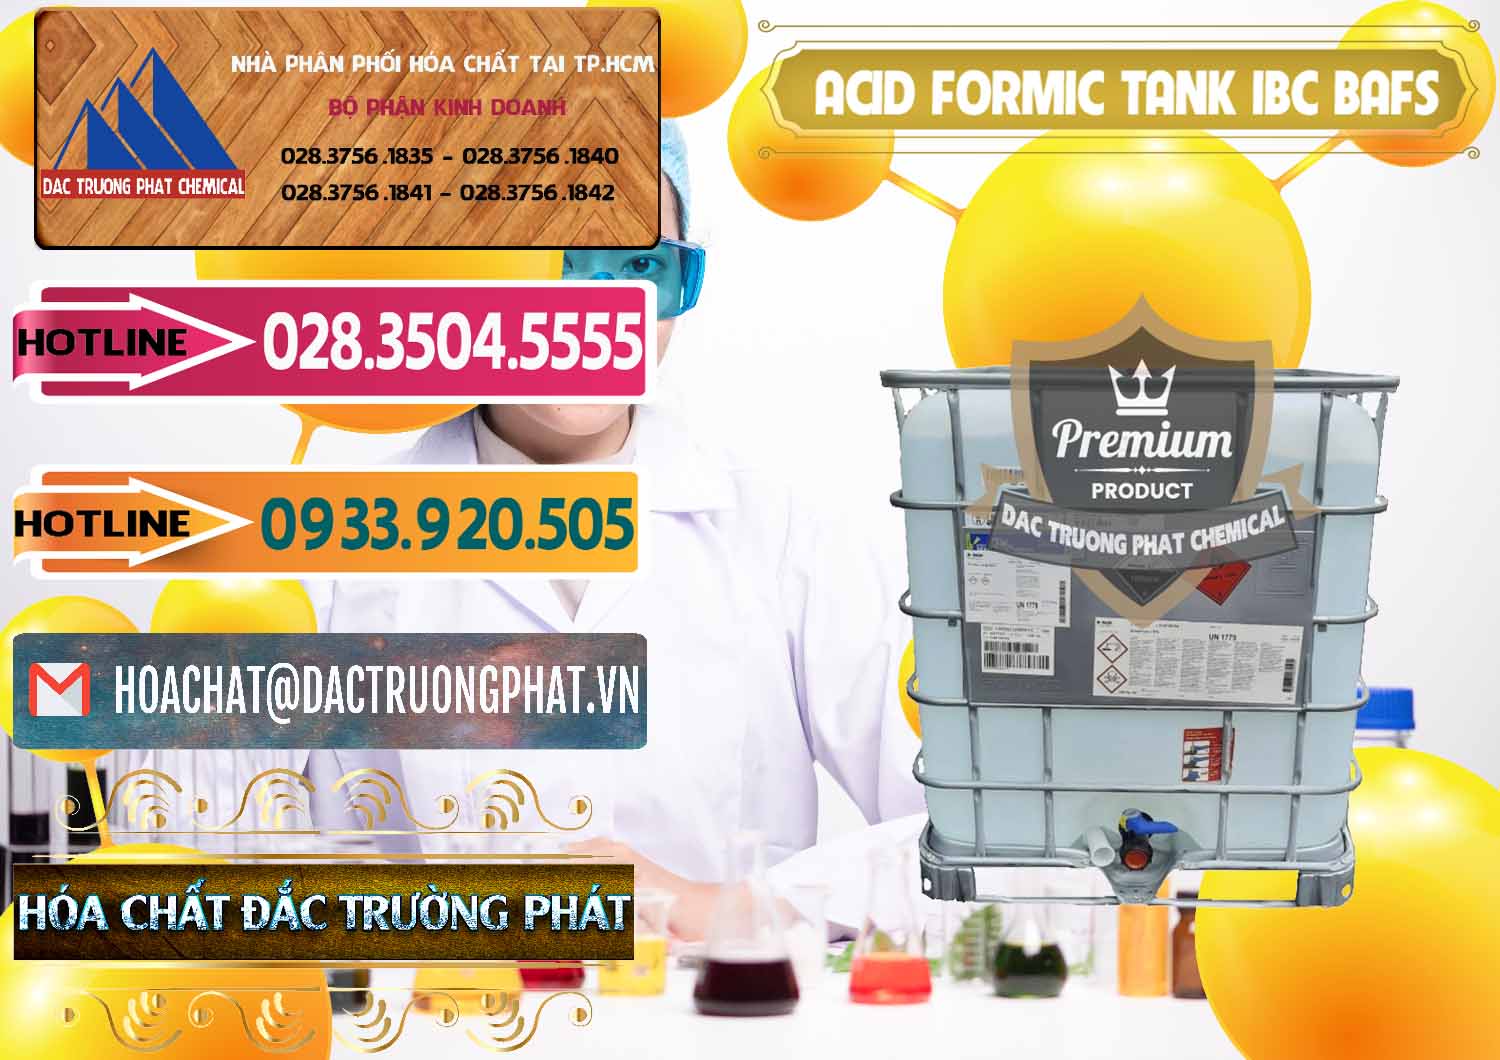 Cty chuyên cung ứng & bán Acid Formic - Axit Formic Tank - Bồn IBC BASF Đức - 0366 - Công ty cung cấp - bán hóa chất tại TP.HCM - dactruongphat.vn